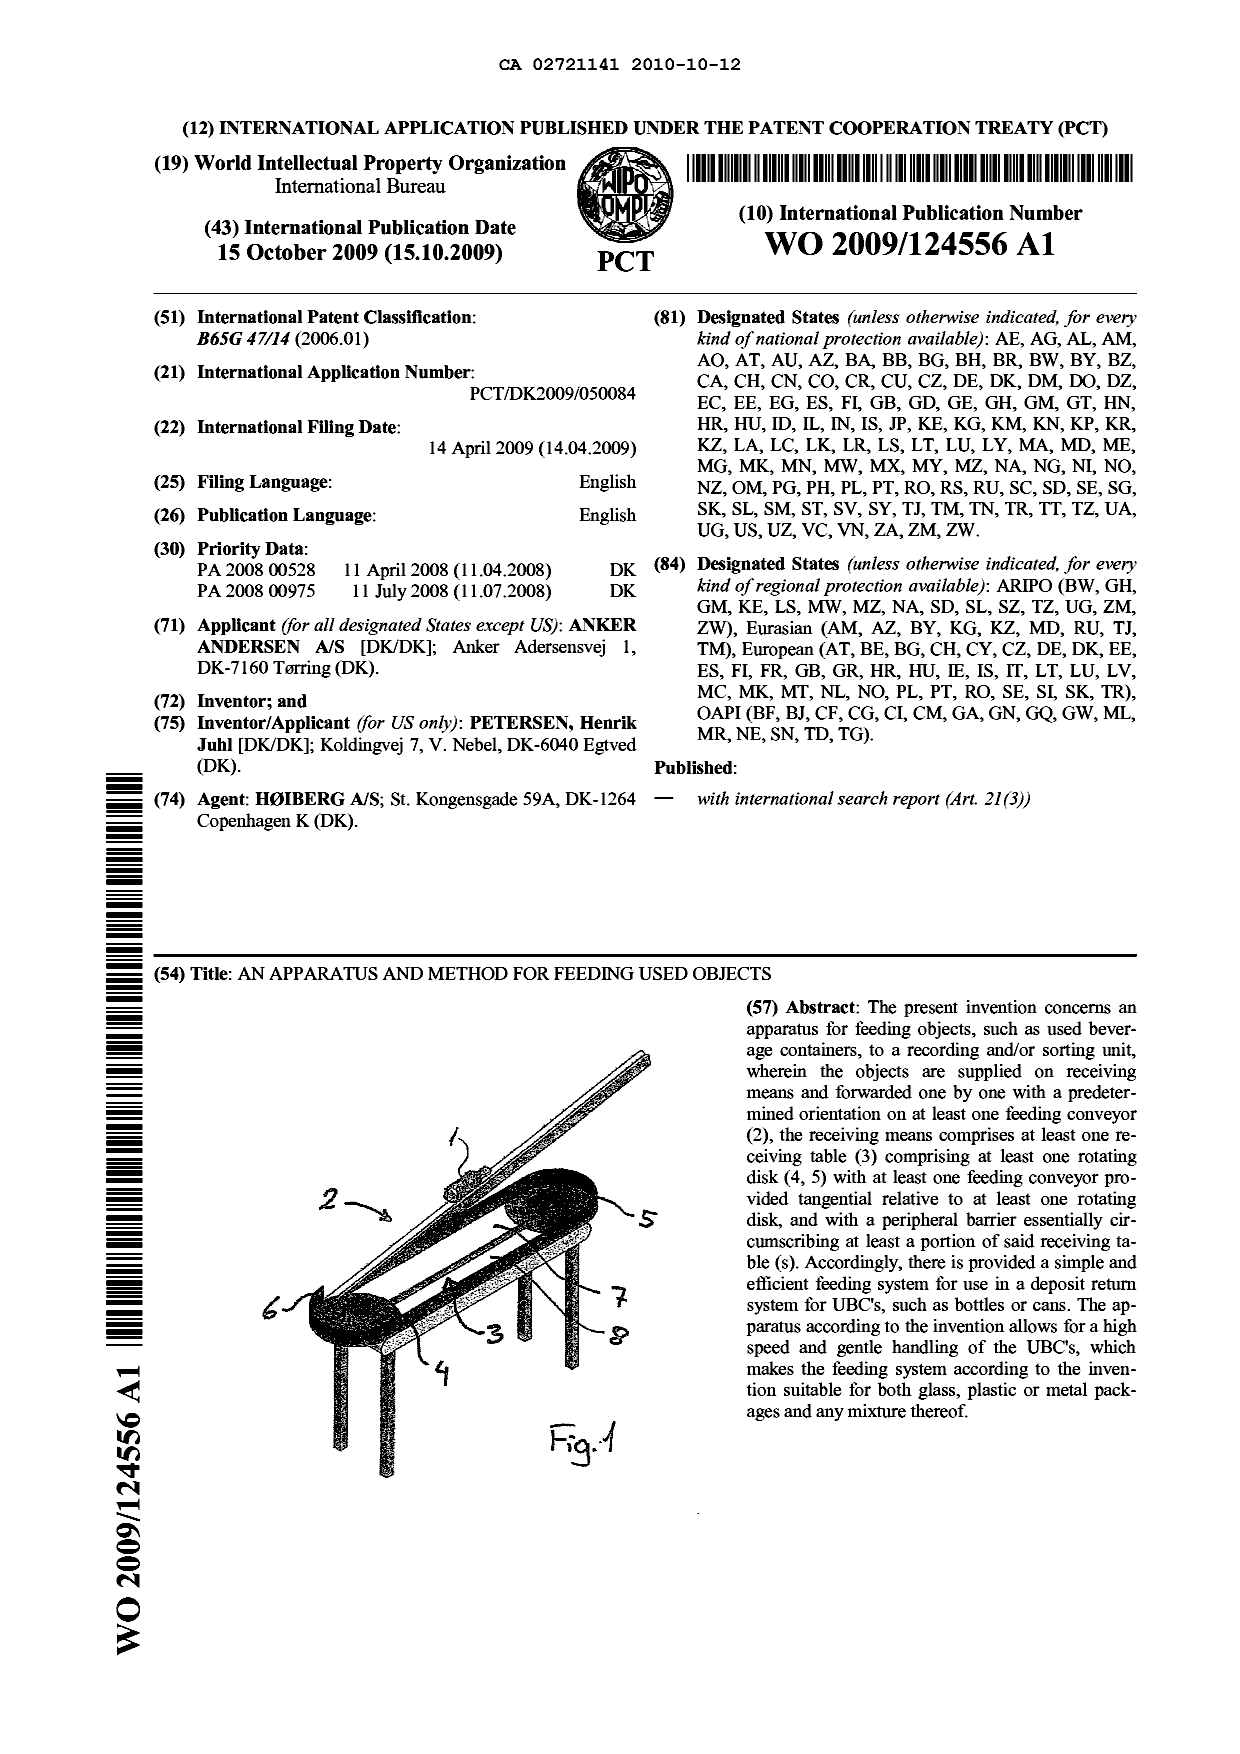 Document de brevet canadien 2721141. Abrégé 20091212. Image 1 de 1